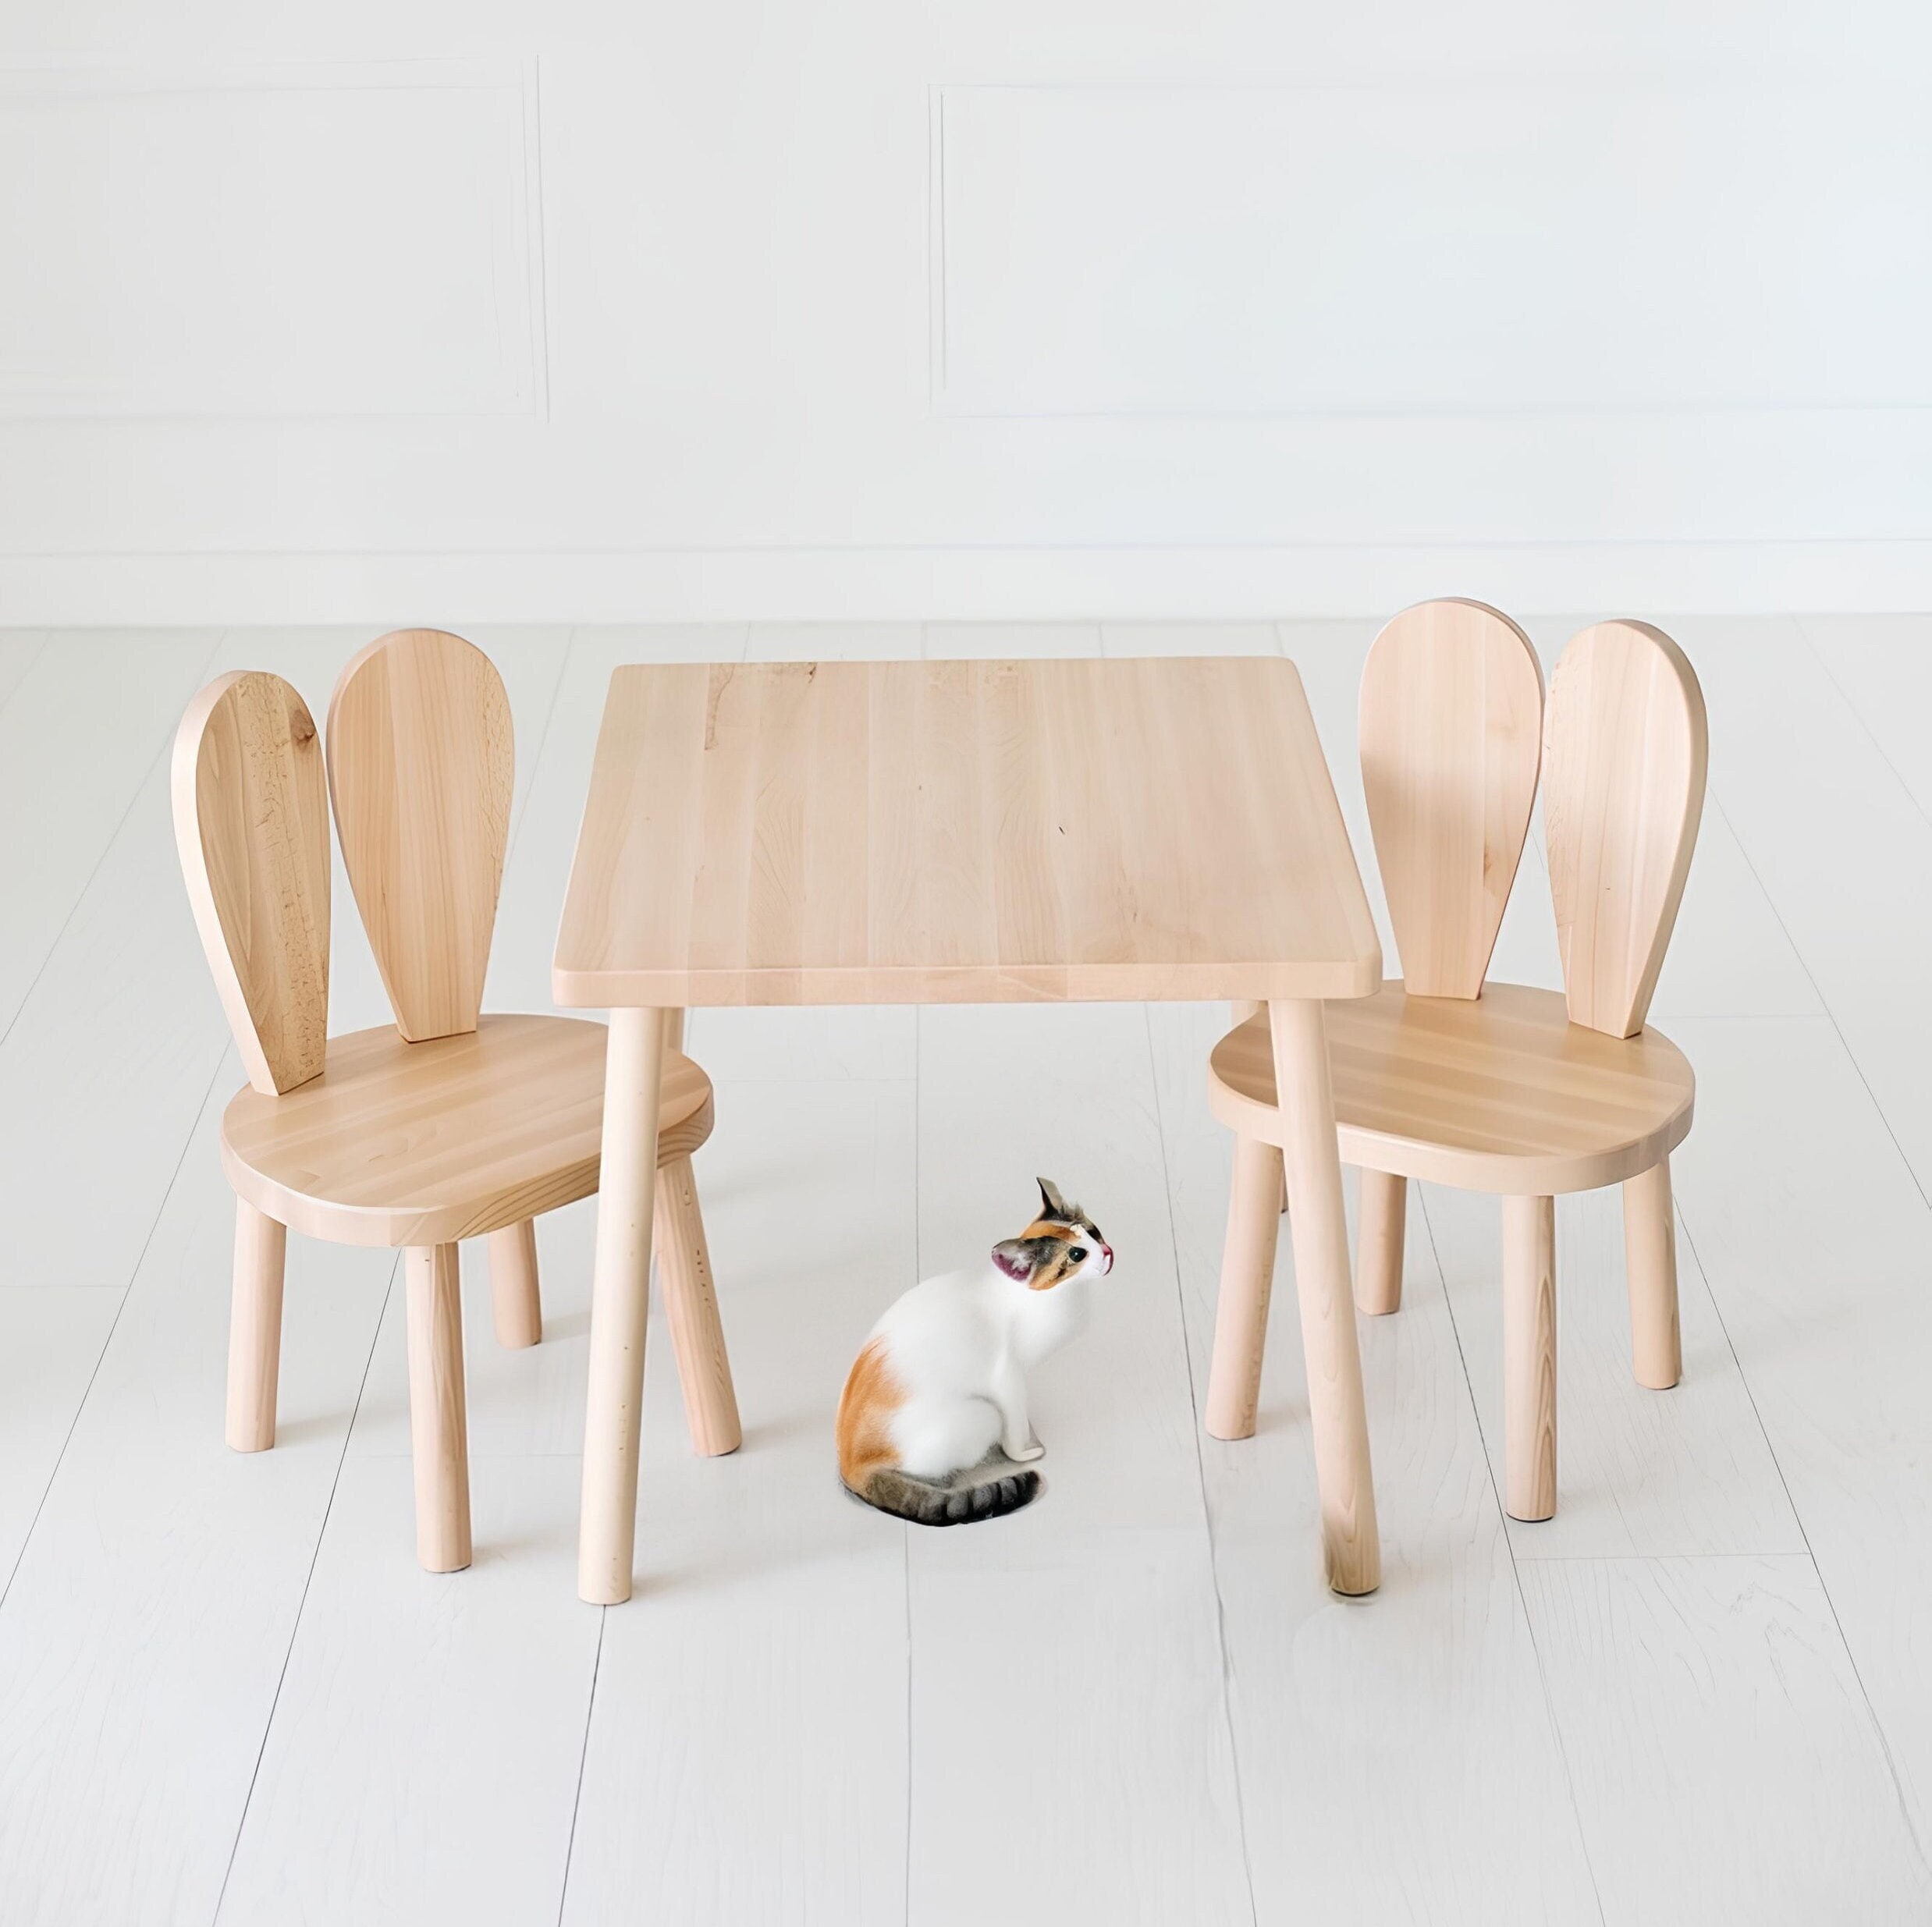 DecHome Set Tavolino con 2 Sedie per Bambini a Forma di Orsetto in Legno  colore Grigio - DCH-3121048B